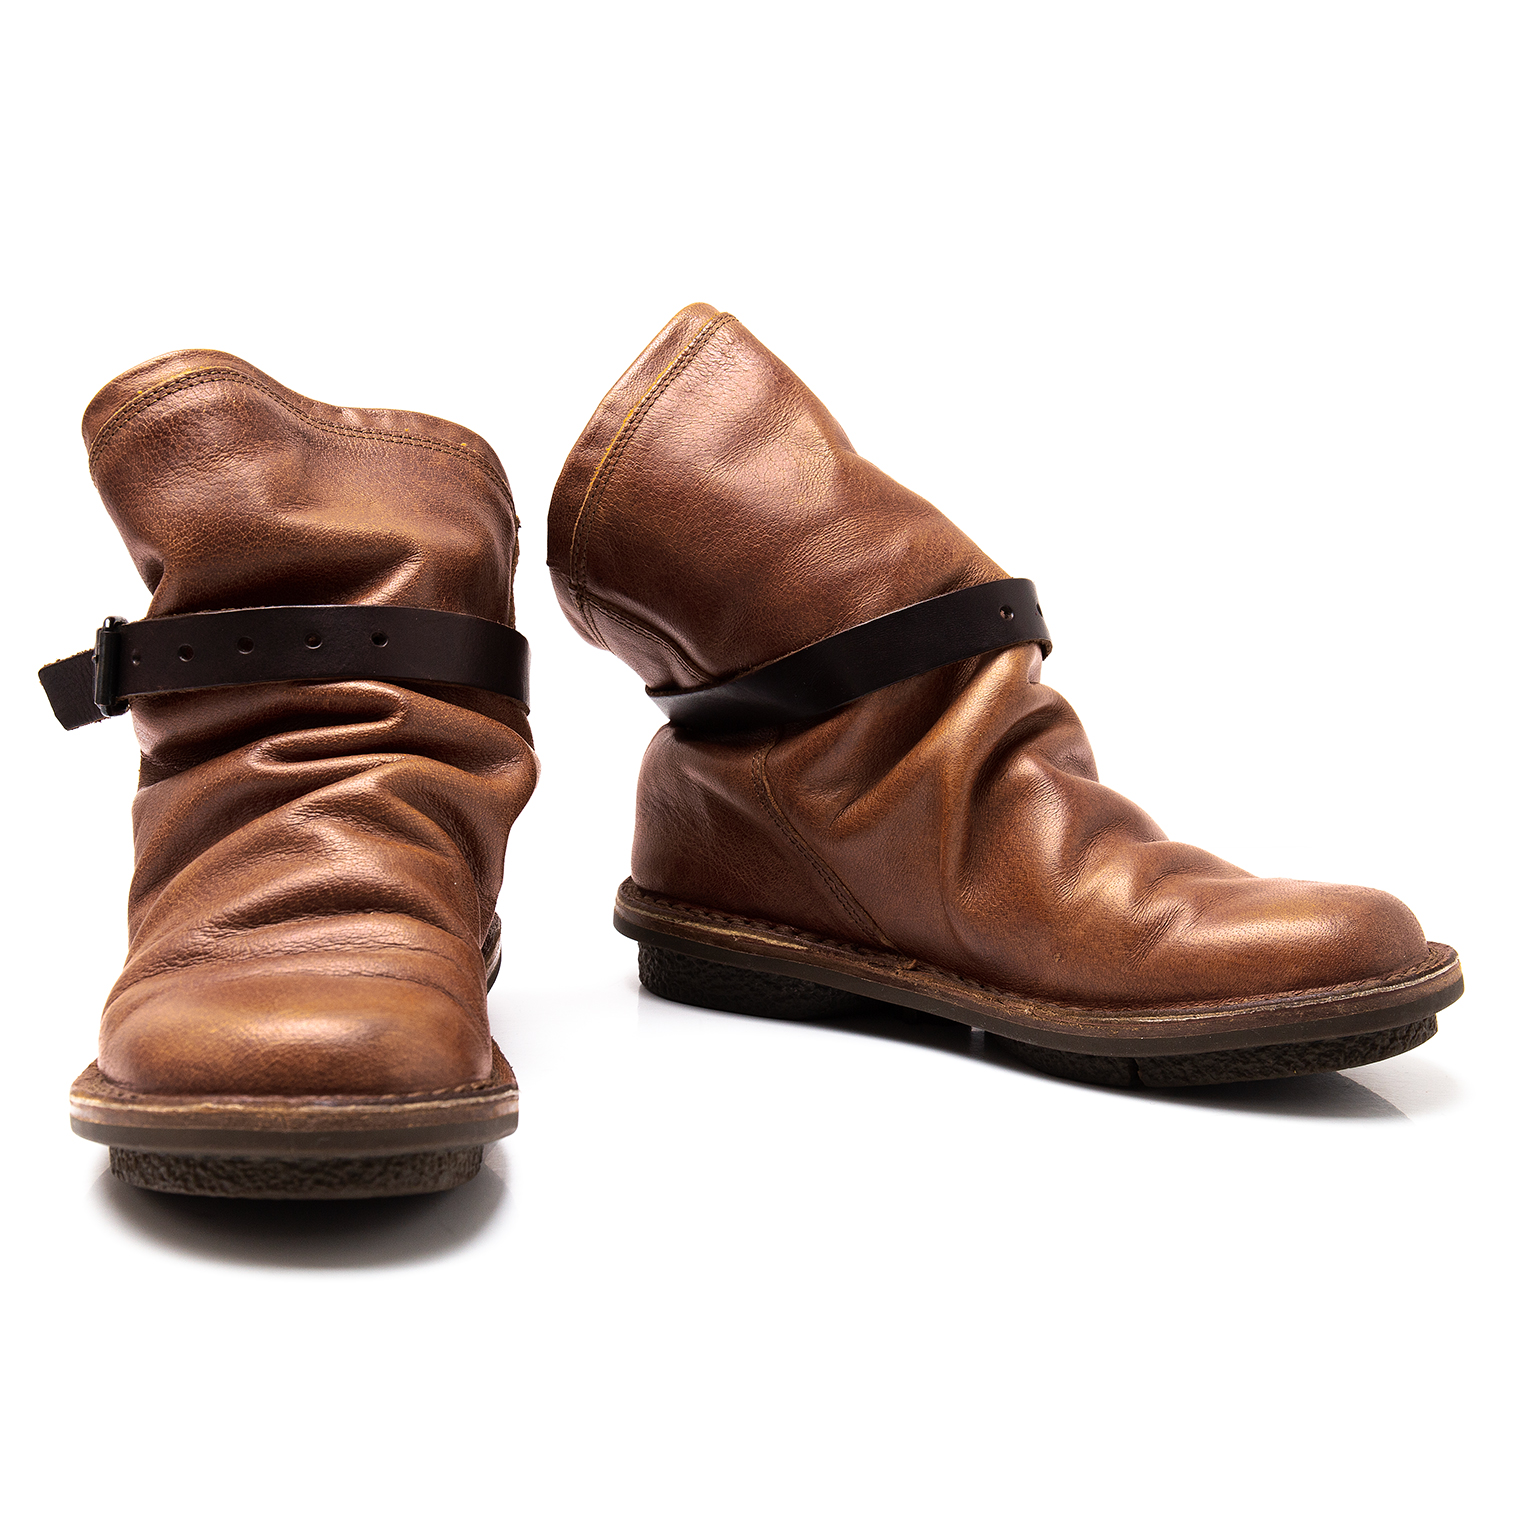 trippen トリッペン warrior-f ロングブーツ 靴 37ロングブーツ - ブーツ